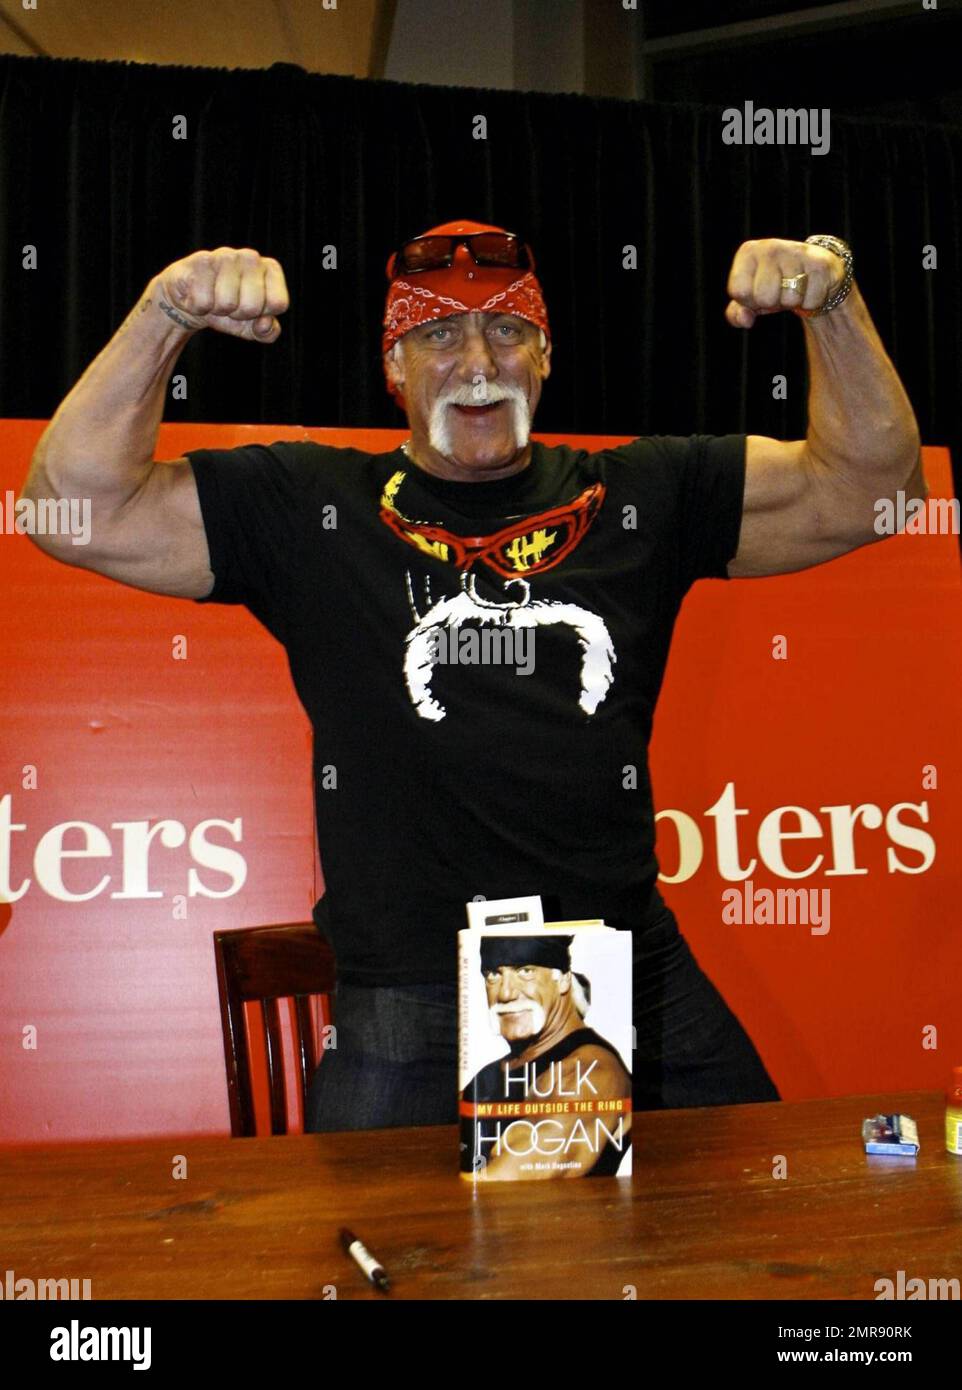 MAVRIXONLINE.COM - POSTA GIORNALIERA ONLINE OUT - Hulk Hogan firma copie del suo nuovo libro 'Hulk Hogan: My Life Outside the Ring' a Chapters in Toronto, ON. 12/9/09. È necessario concordare tariffe per l'utilizzo delle immagini. Byline, credito, uso TV, uso web o linkback deve leggere MAVRIXONLINE.COM. In caso contrario, la tariffa concordata verrà raddoppiata. Tel: 305 542 9275 o 954 698 6777. Foto Stock